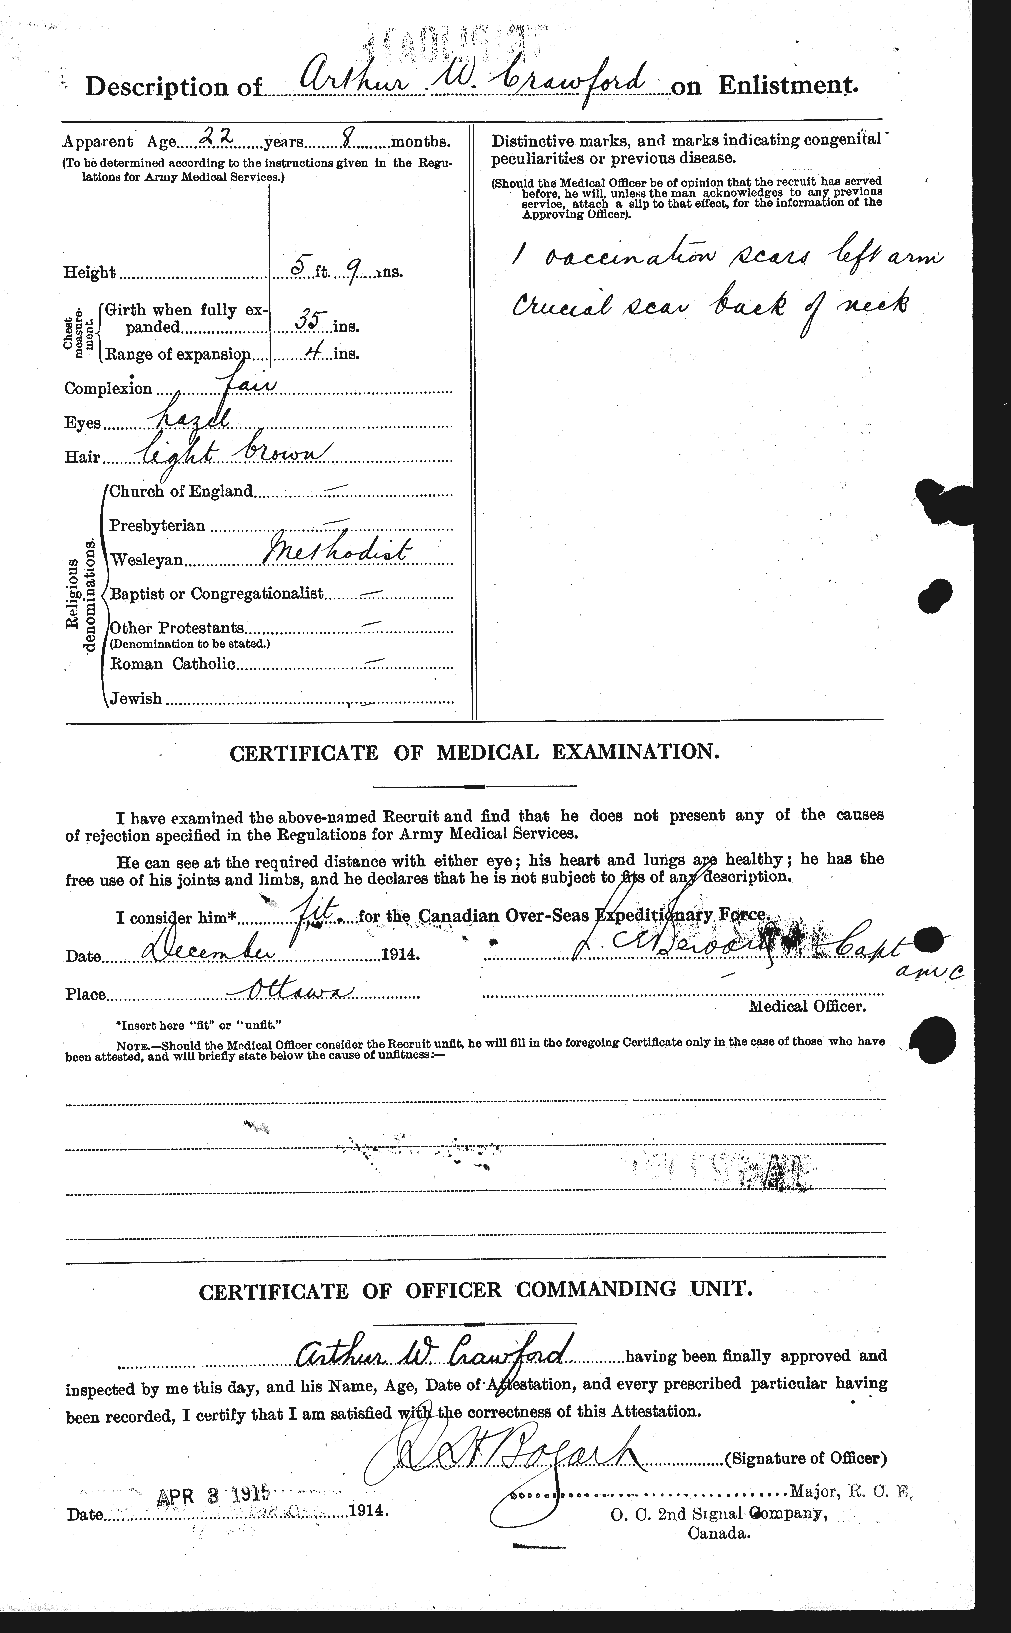 Dossiers du Personnel de la Première Guerre mondiale - CEC 060924b